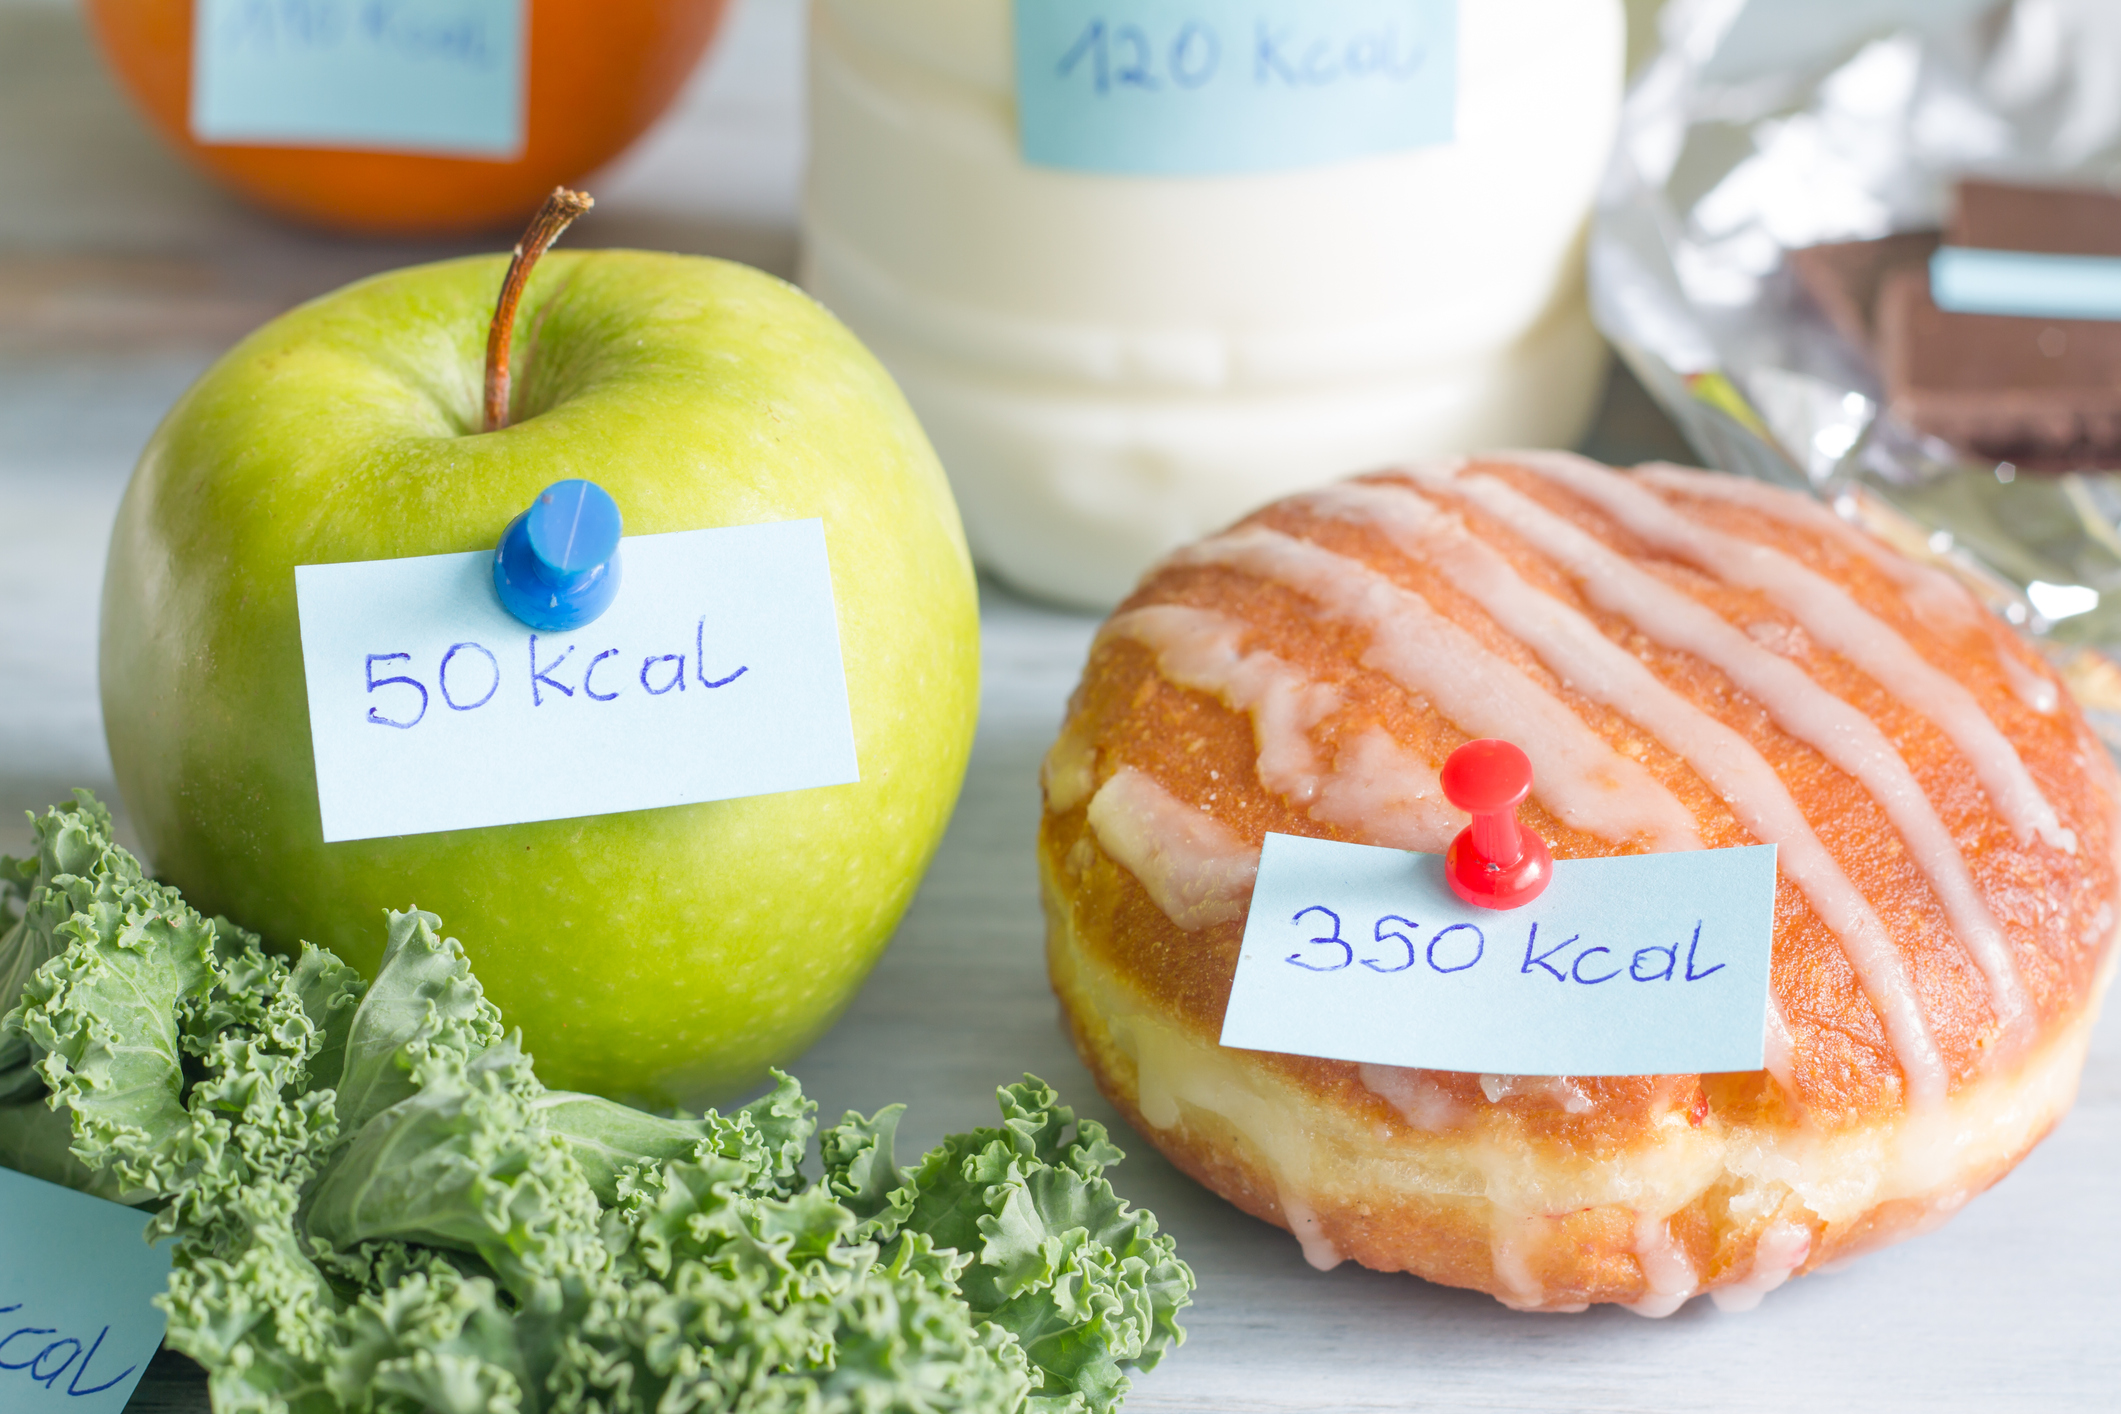 Numărarea caloriilor din alimente: calea rapidă spre succesul dietei